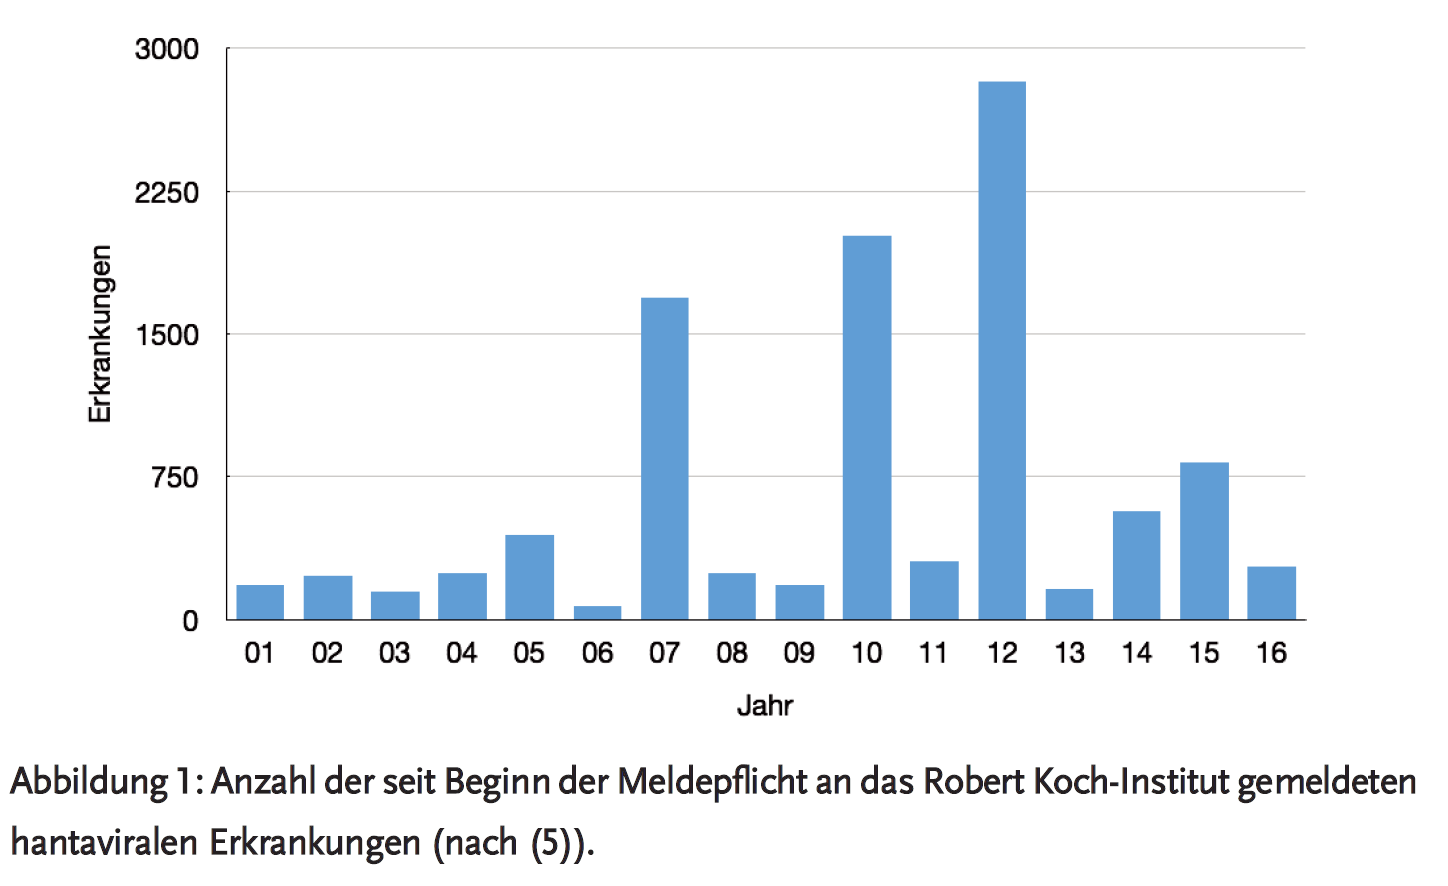 Abbildung 1: Anzahl der seit Beginn der Meldepflicht an das Robert Koch-Institut gemeldeten hantaviralen Erkrankungen (nach (5)).